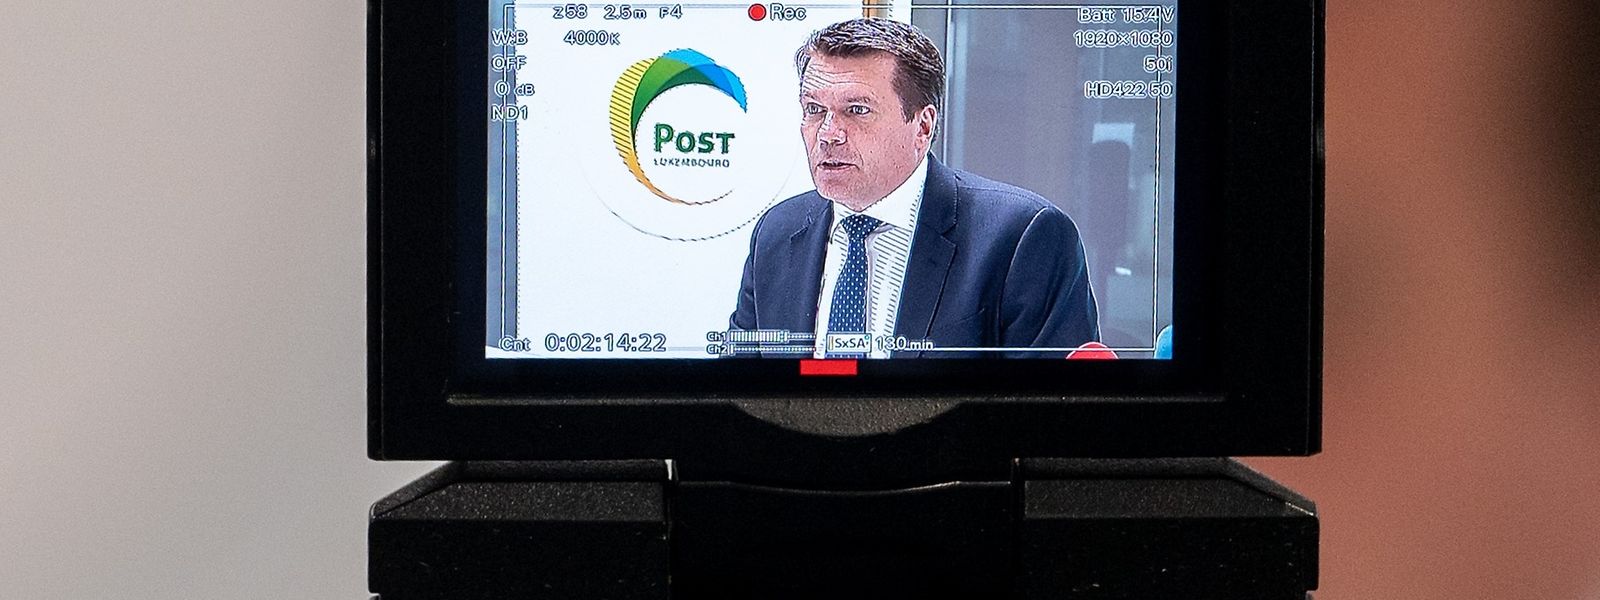 Das Onlinebanking von Post Finance wird weitgehend gebührenfrei - Postchef Claude Strasser stellt neue Tarifstruktur vor.